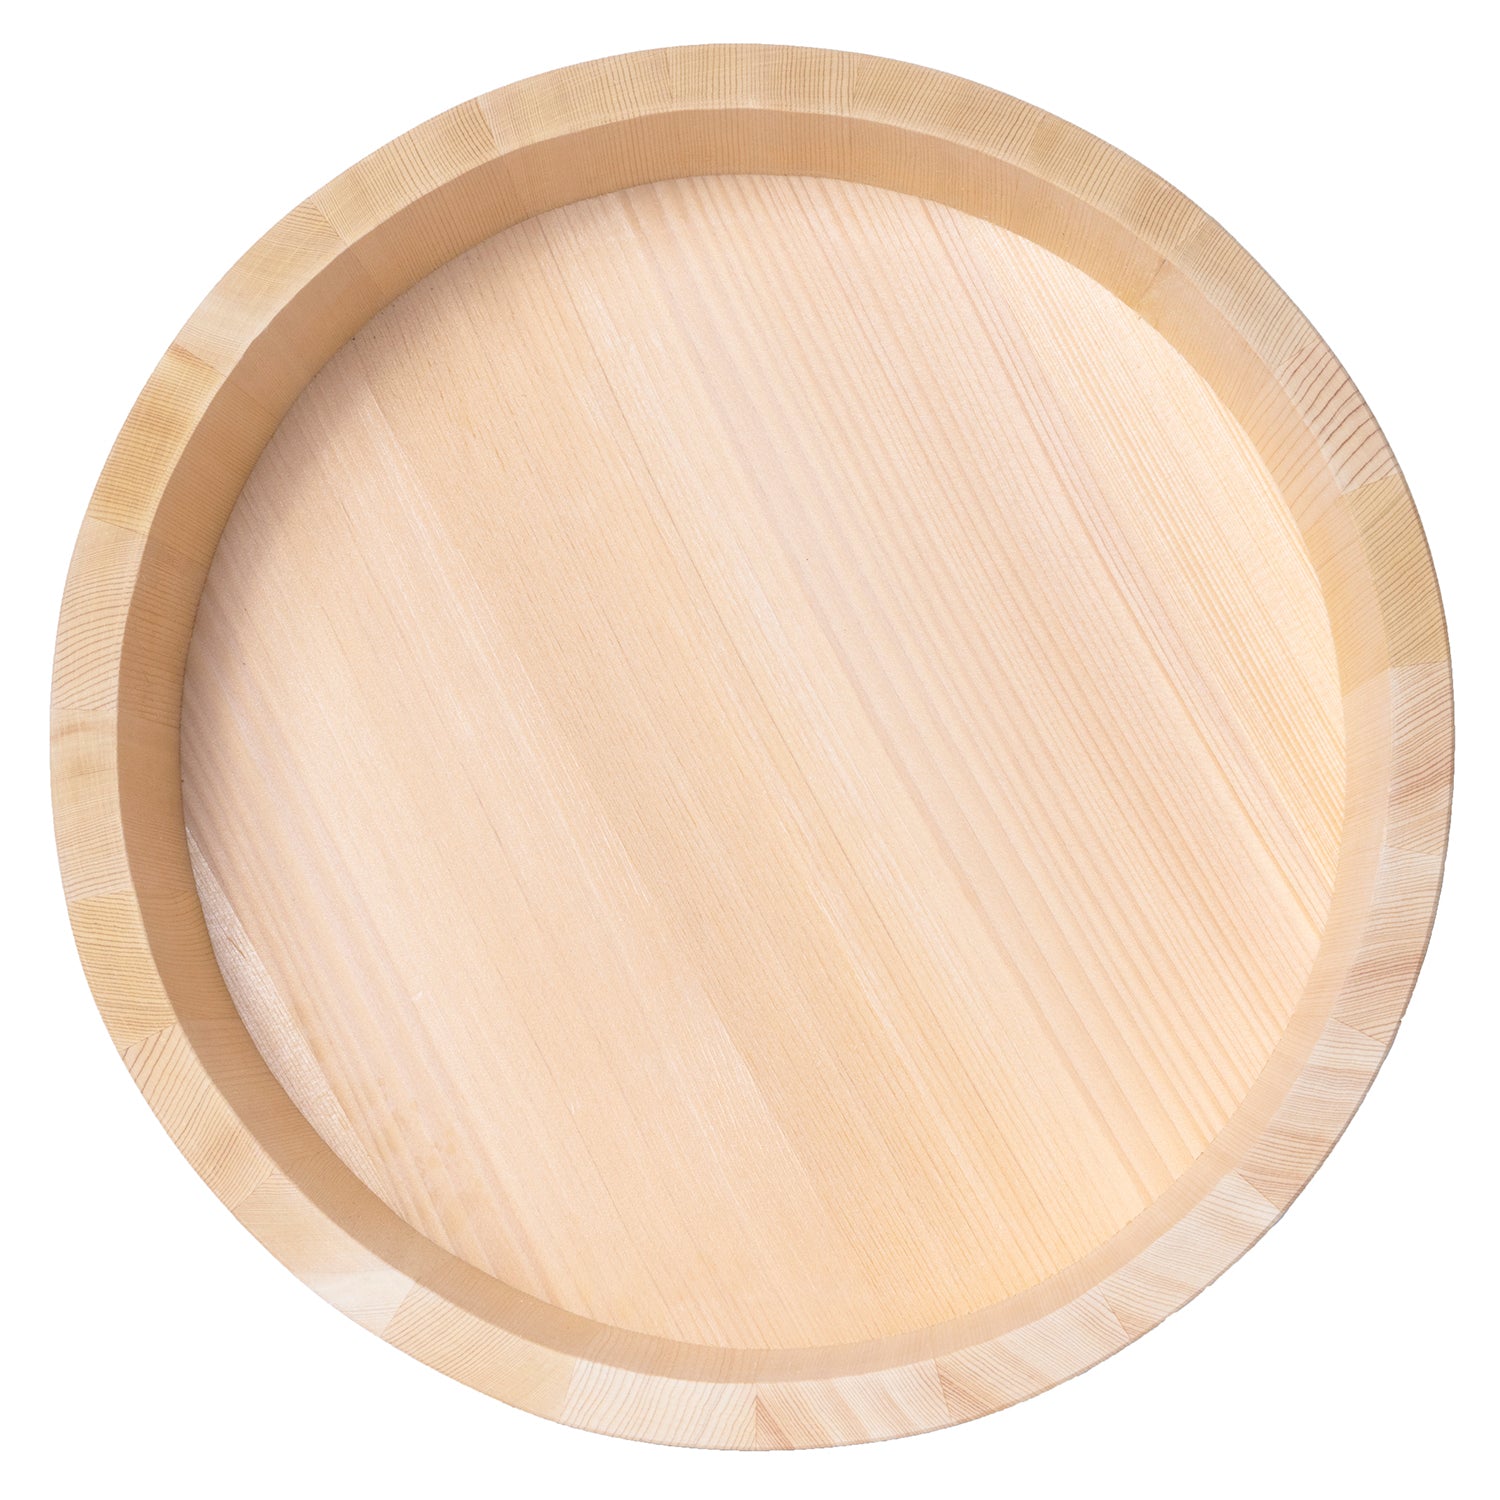 Wooden mixing bowl – Breadsbyreisy